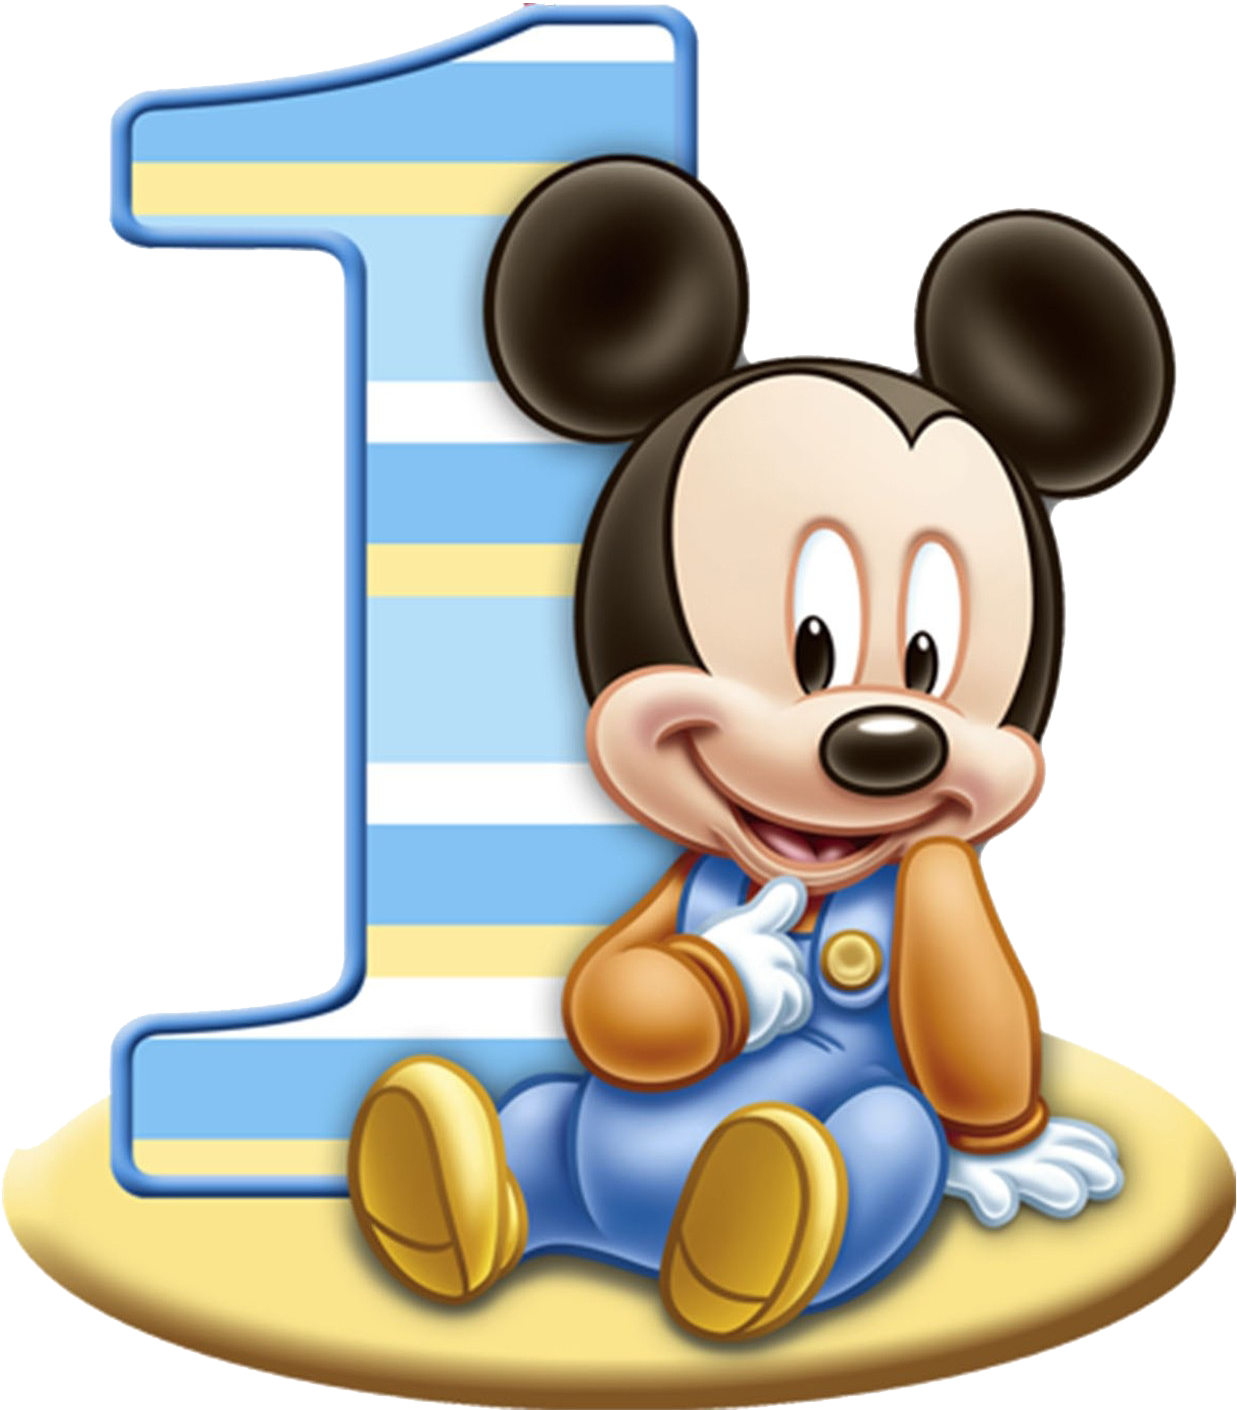 Tải hình PNG sinh nhật lần đầu miễn phí: Tải ngay những hình ảnh mới nhất liên quan đến sinh nhật lần đầu miễn phí - featuring Baby Mickey Mouse. Hình ảnh PNG này chất lượng cao và dễ dàng sử dụng trên các thiết bị di động hoặc máy tính của bạn. Bạn có thể sử dụng chúng để trang trí hoặc tạo ra nhiều ý tưởng thiết kế cho bữa tiệc sinh nhật.